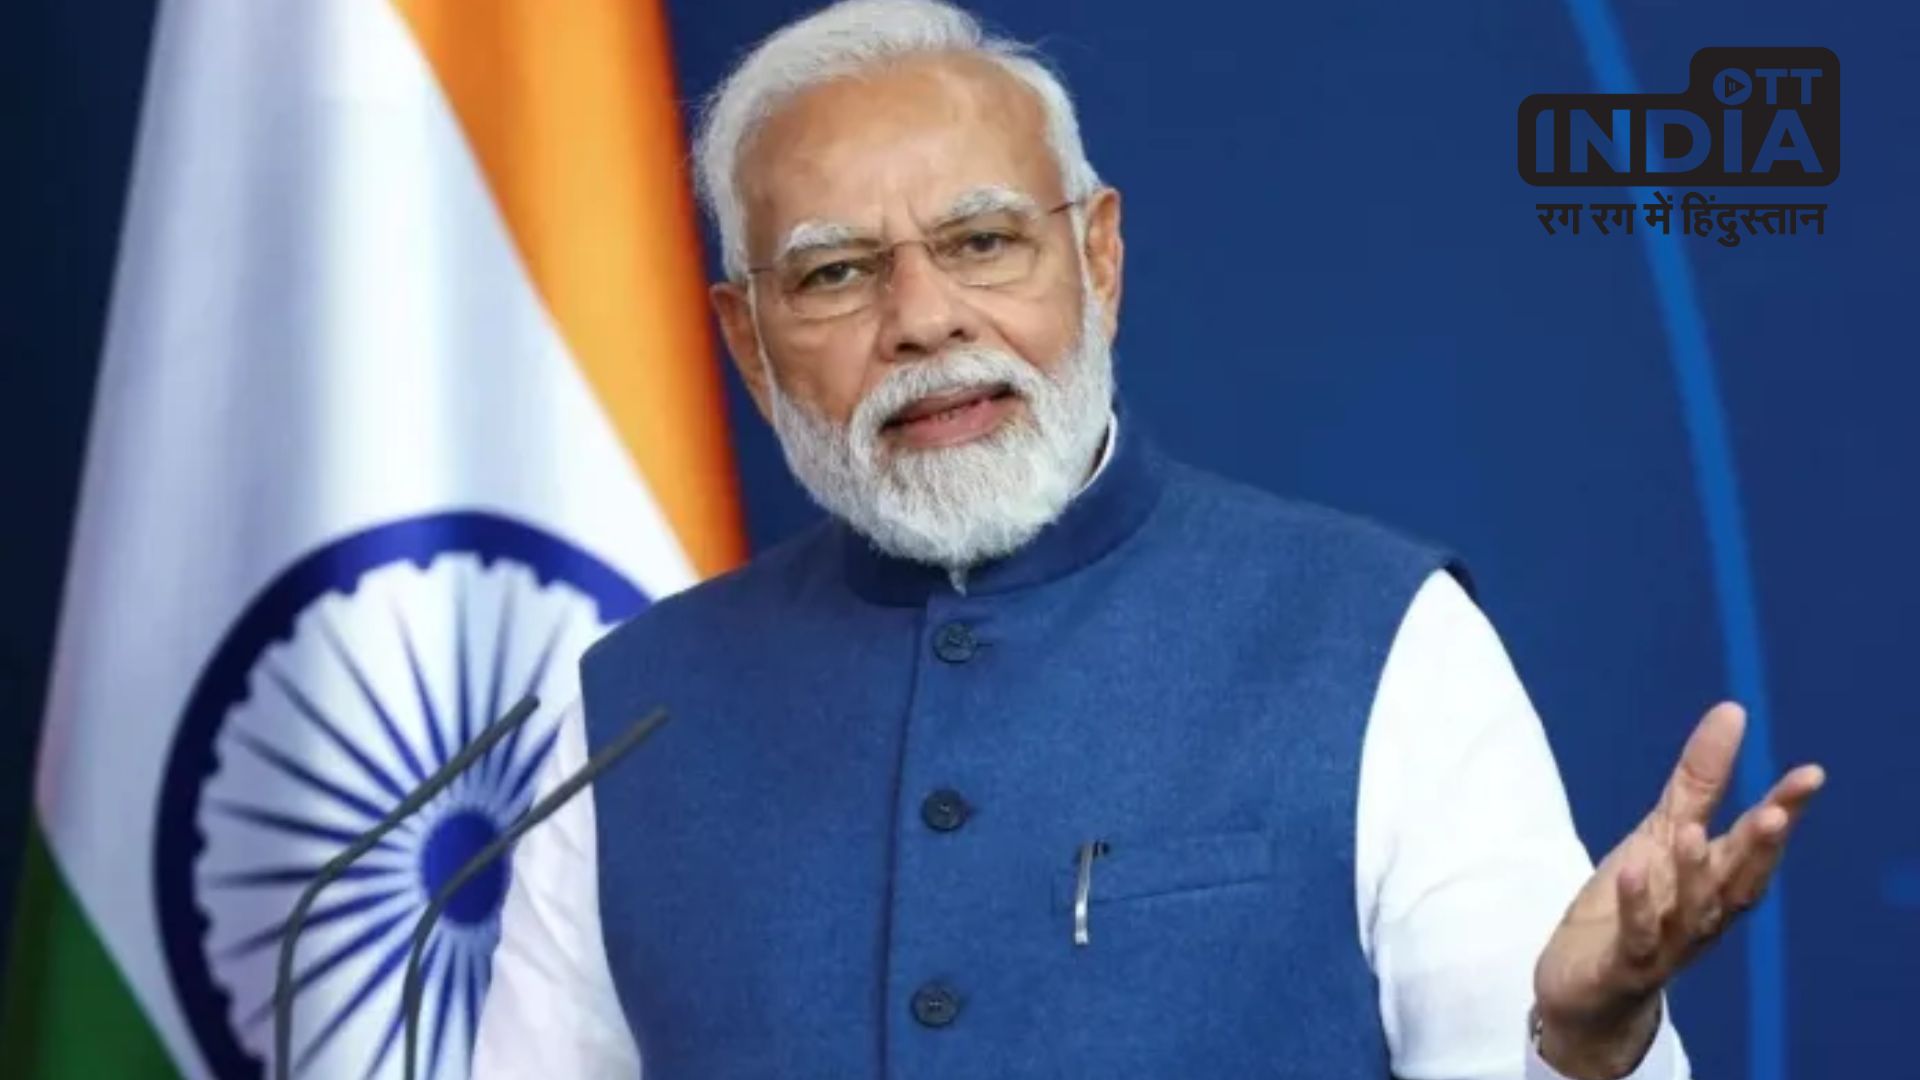 G20 Summit In India : कश्मीर और अरुणाचल प्रदेश में जी-20 कार्यक्रम आयोजित करने पर चीन ने जताई आपत्ति, पीएम मोदी ने ऐसे रोका अपना भाषण